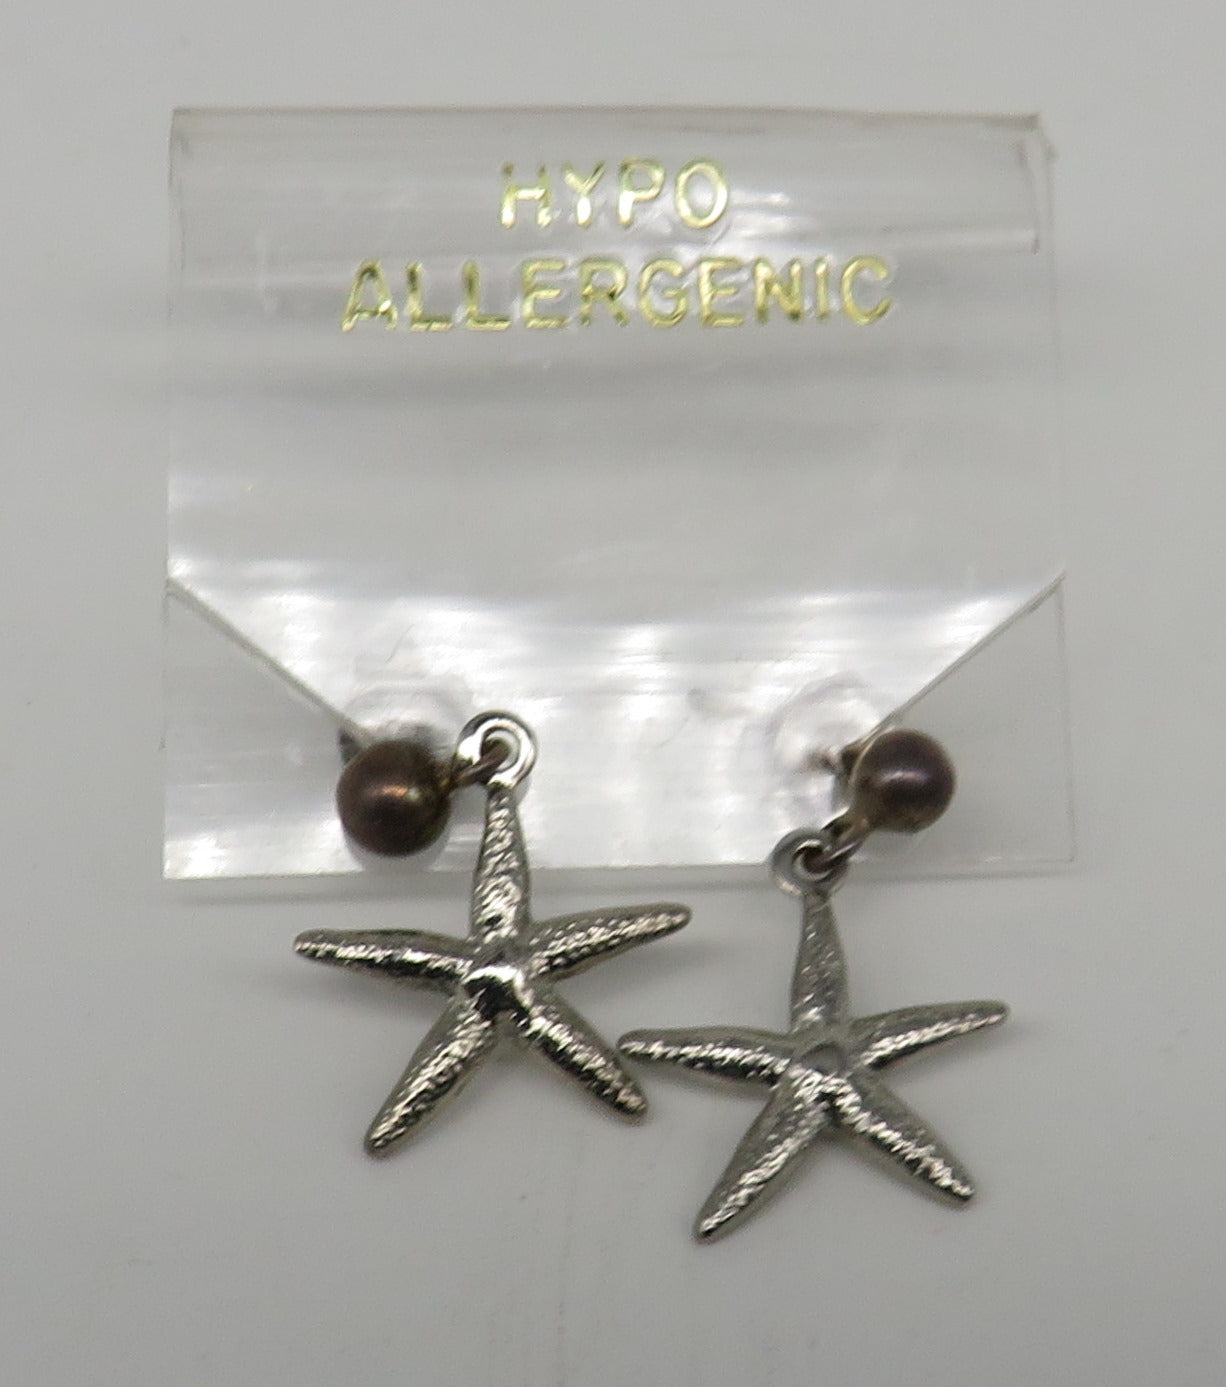 Petite Sterling Silver Starfish Dangle Pierced Earrings